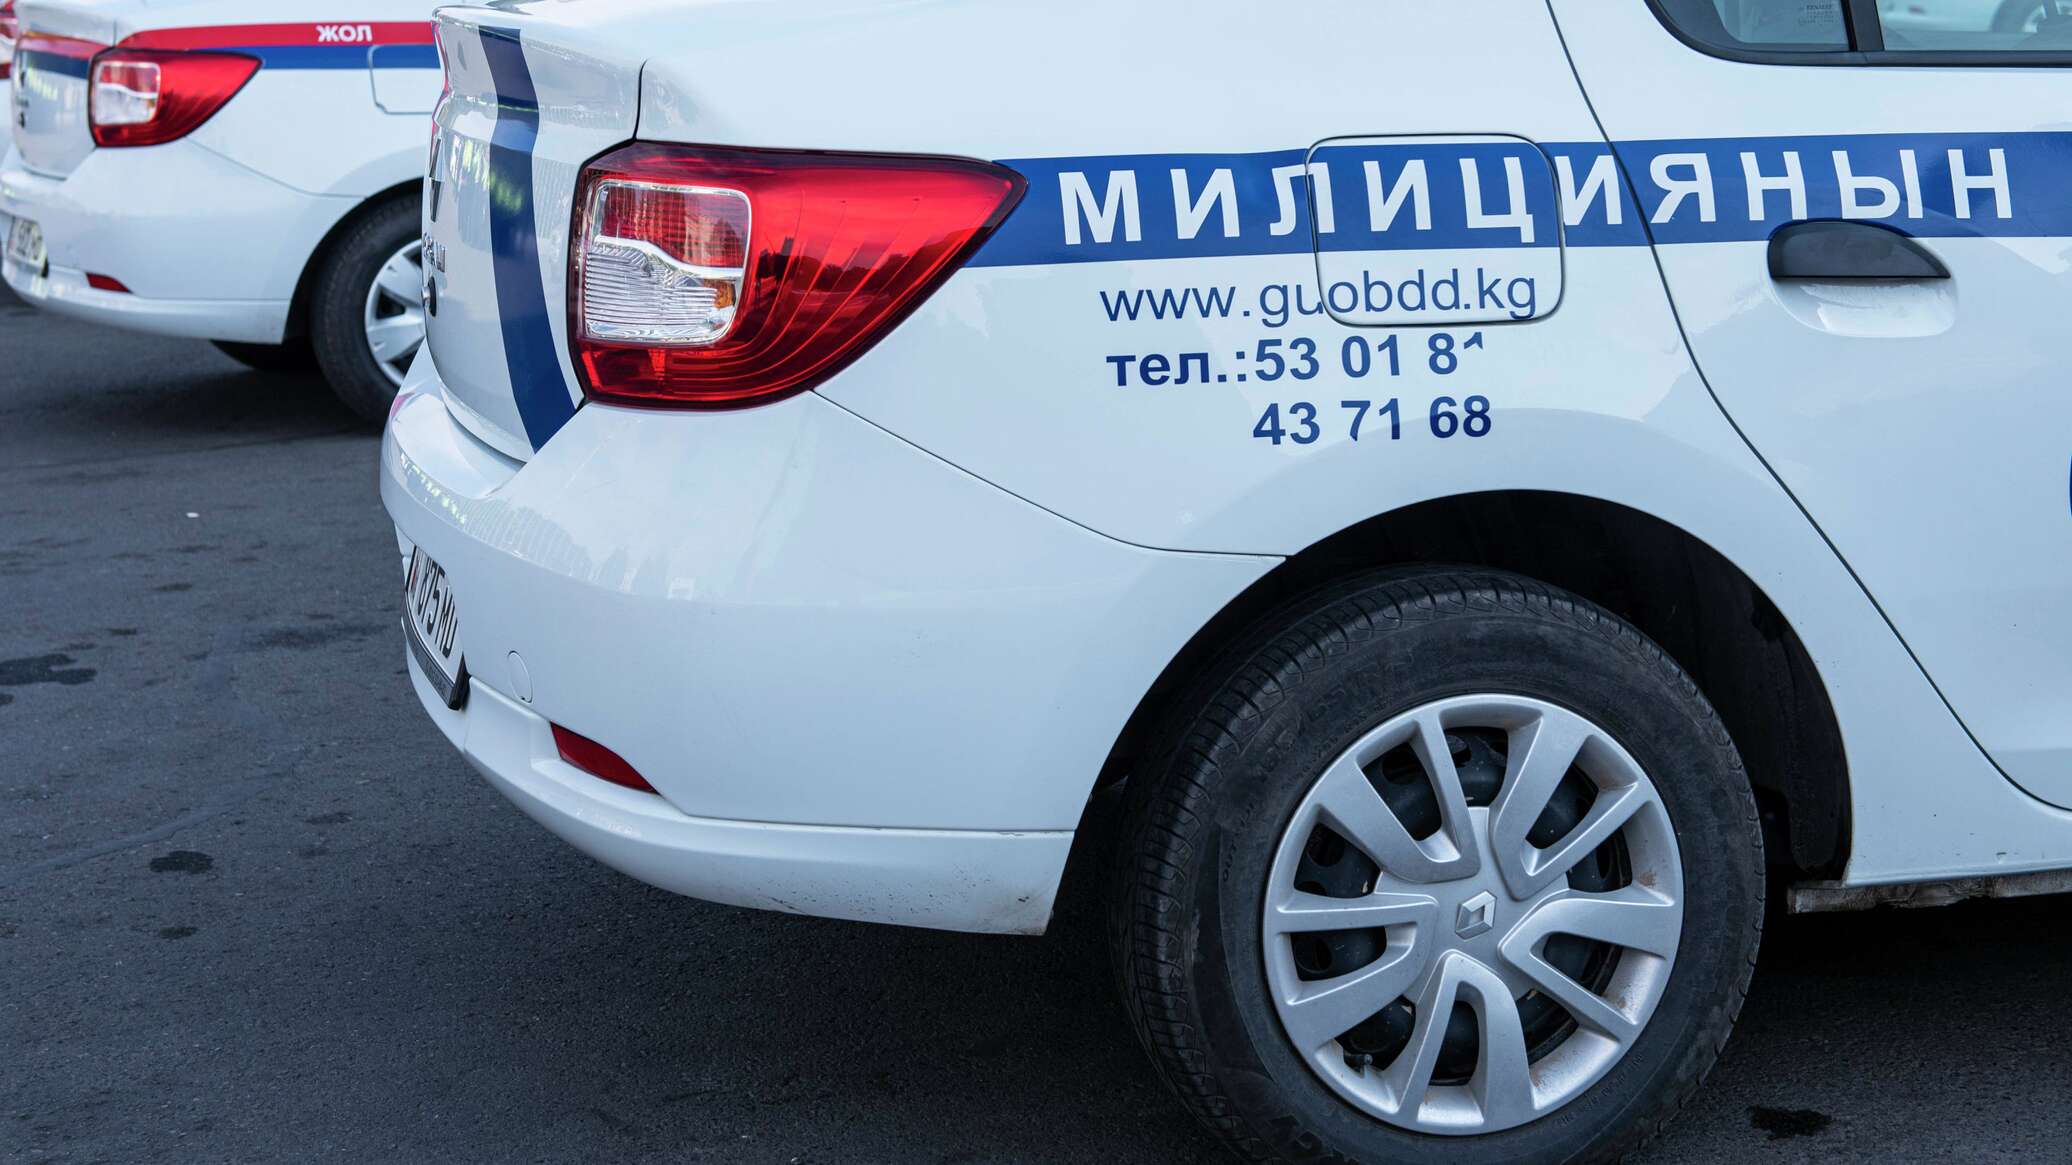 Службеные авто милиции Кыргызстан